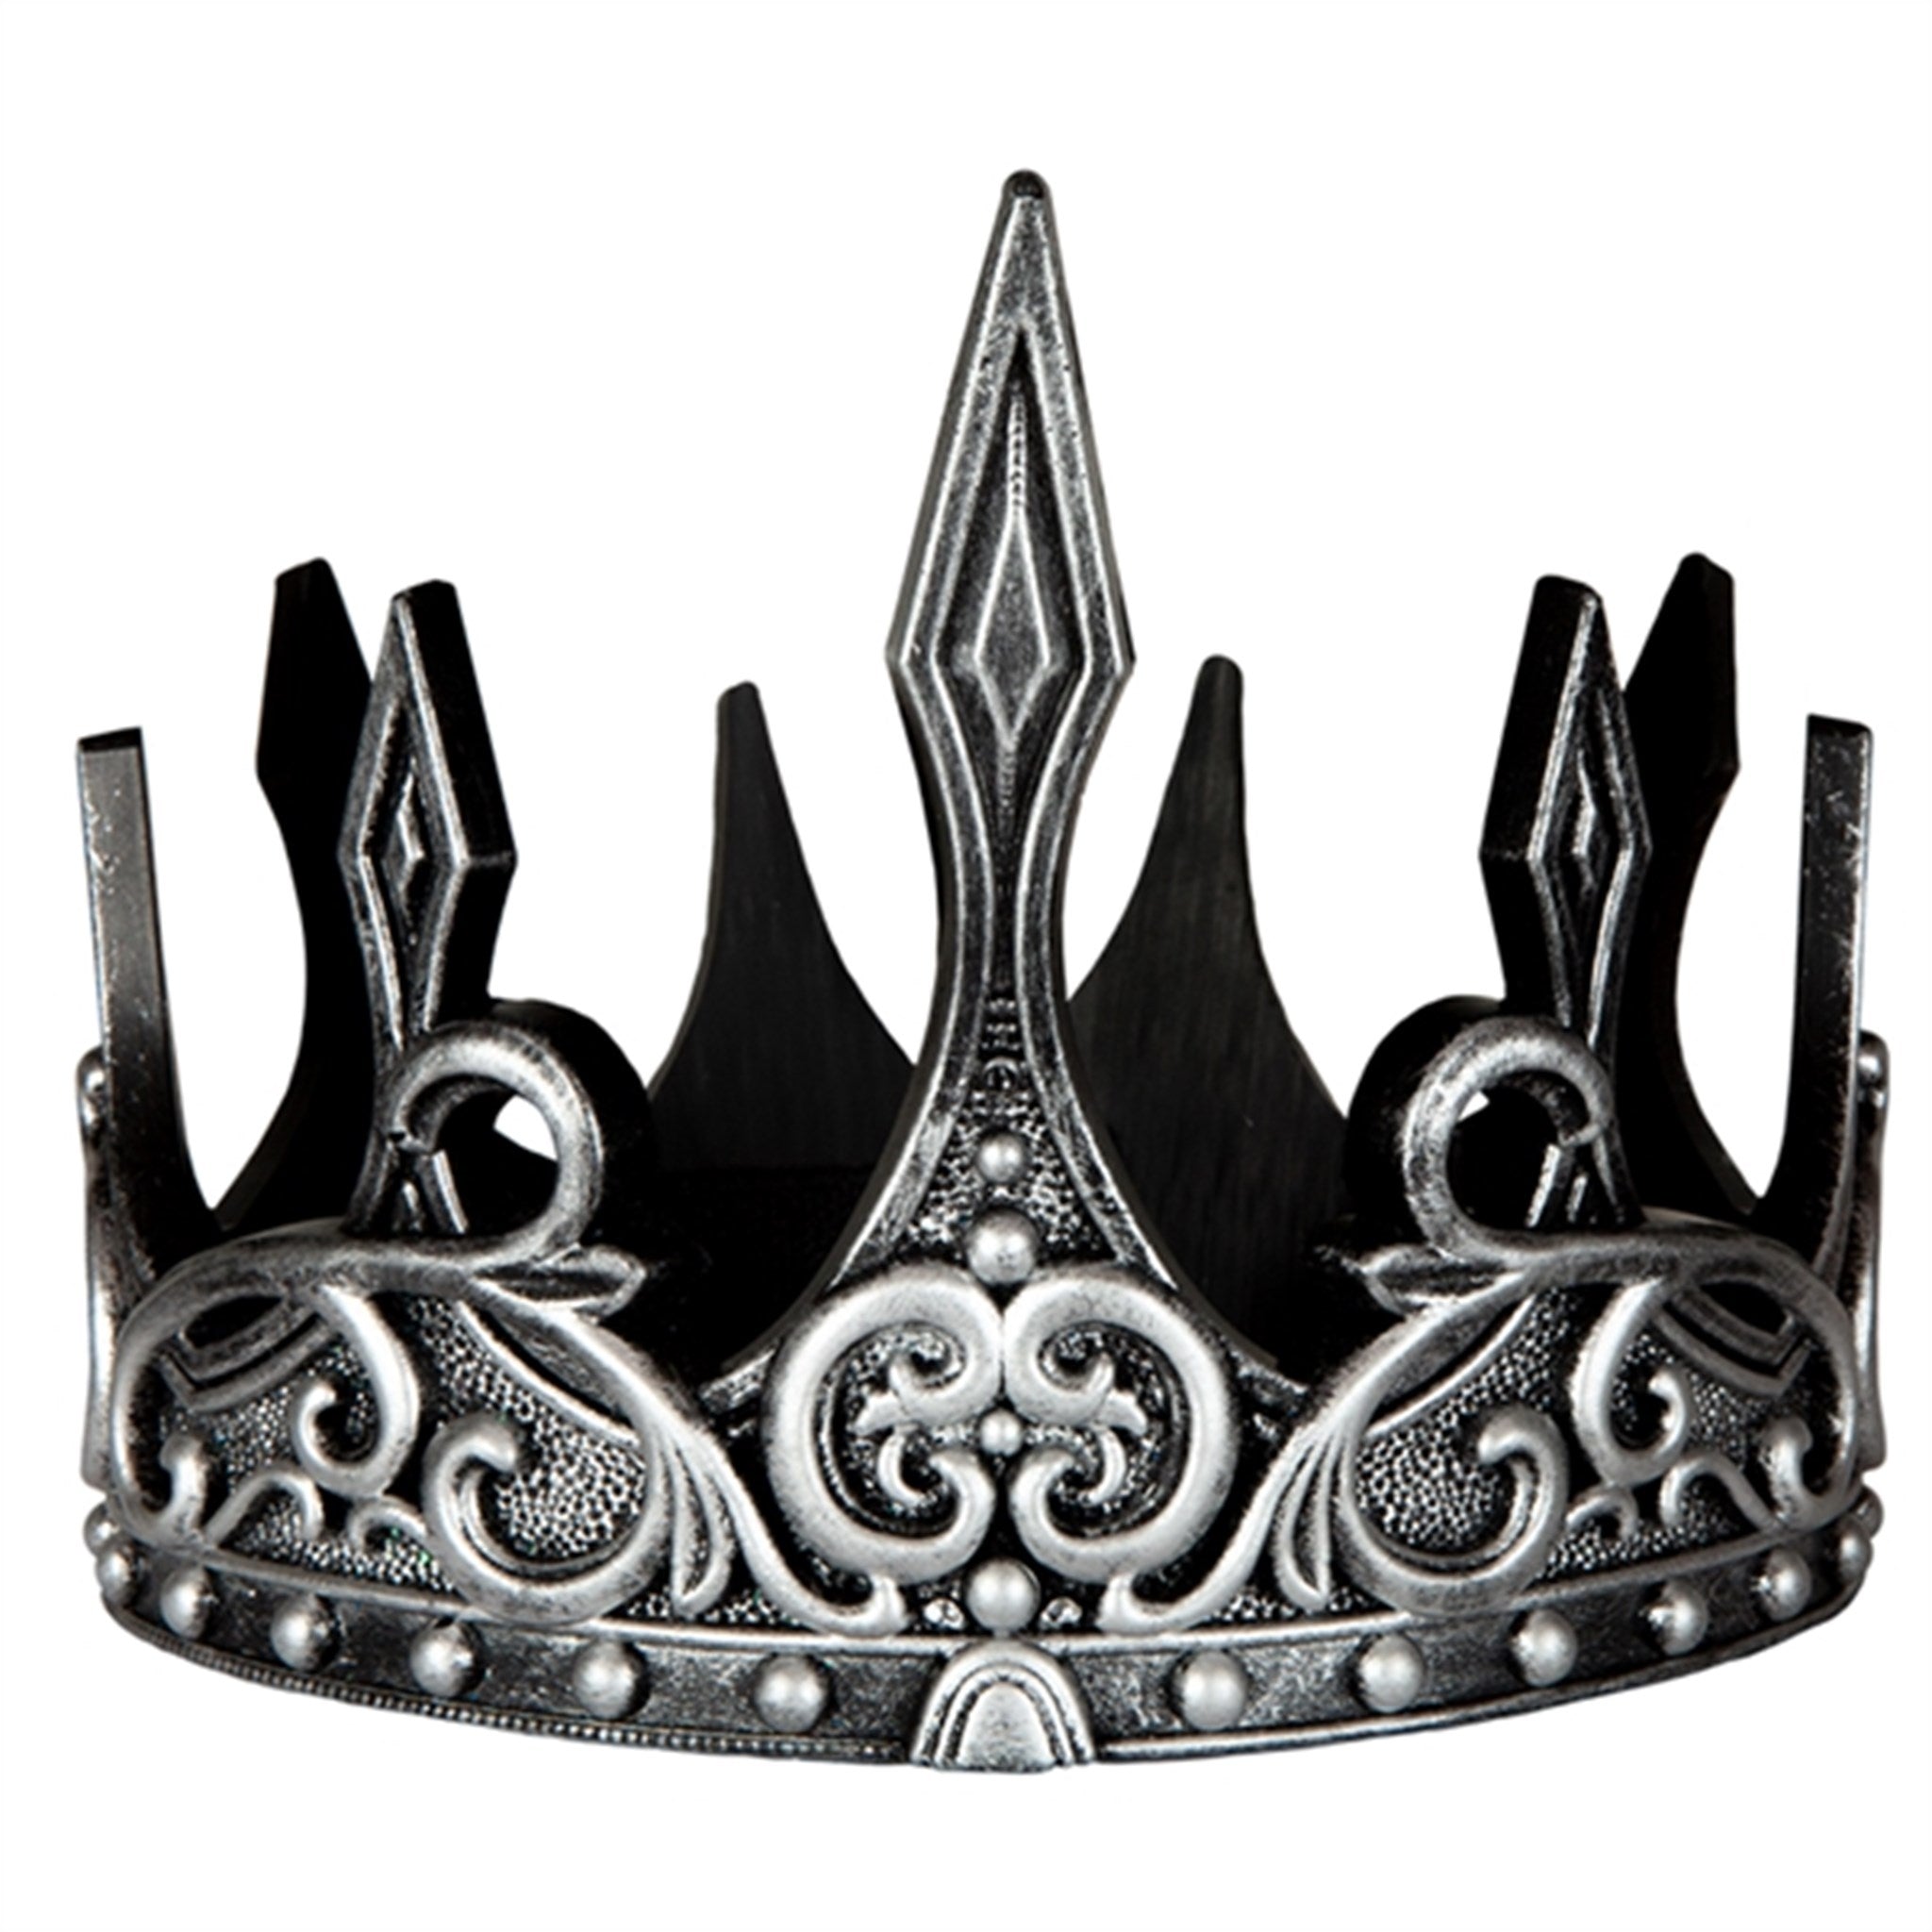 Great Pretenders Medieval Crown Silver/Black